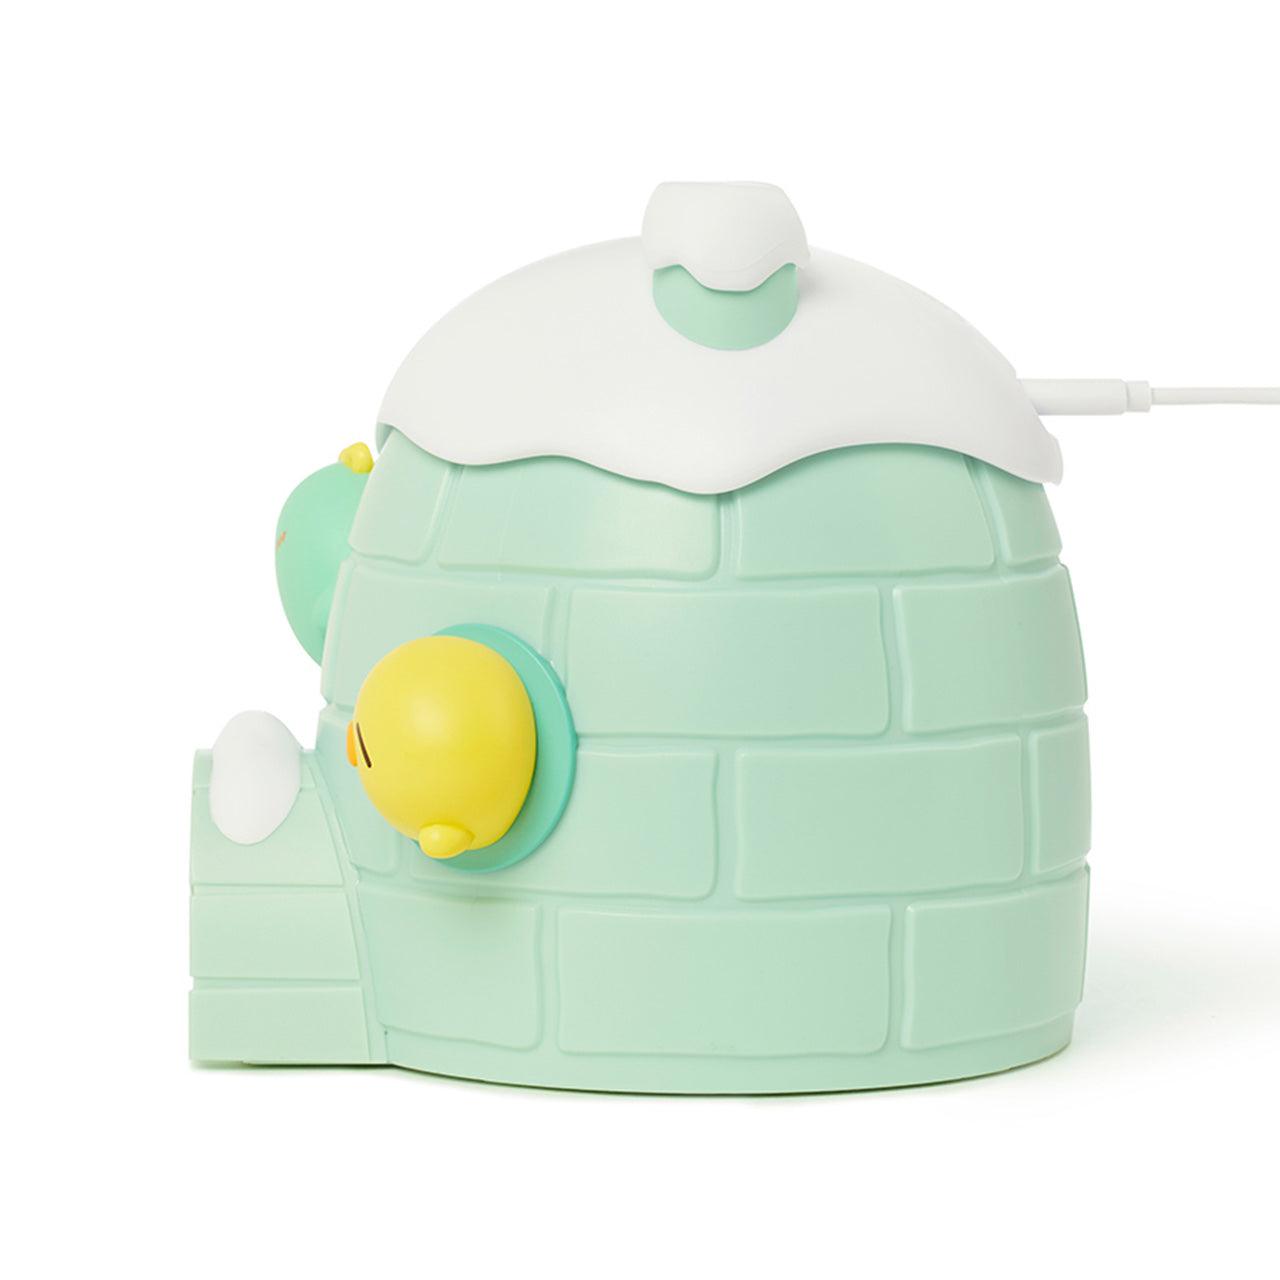 Kakao Friends Jordy Humidifier 加濕器 - SOUL SIMPLE HK